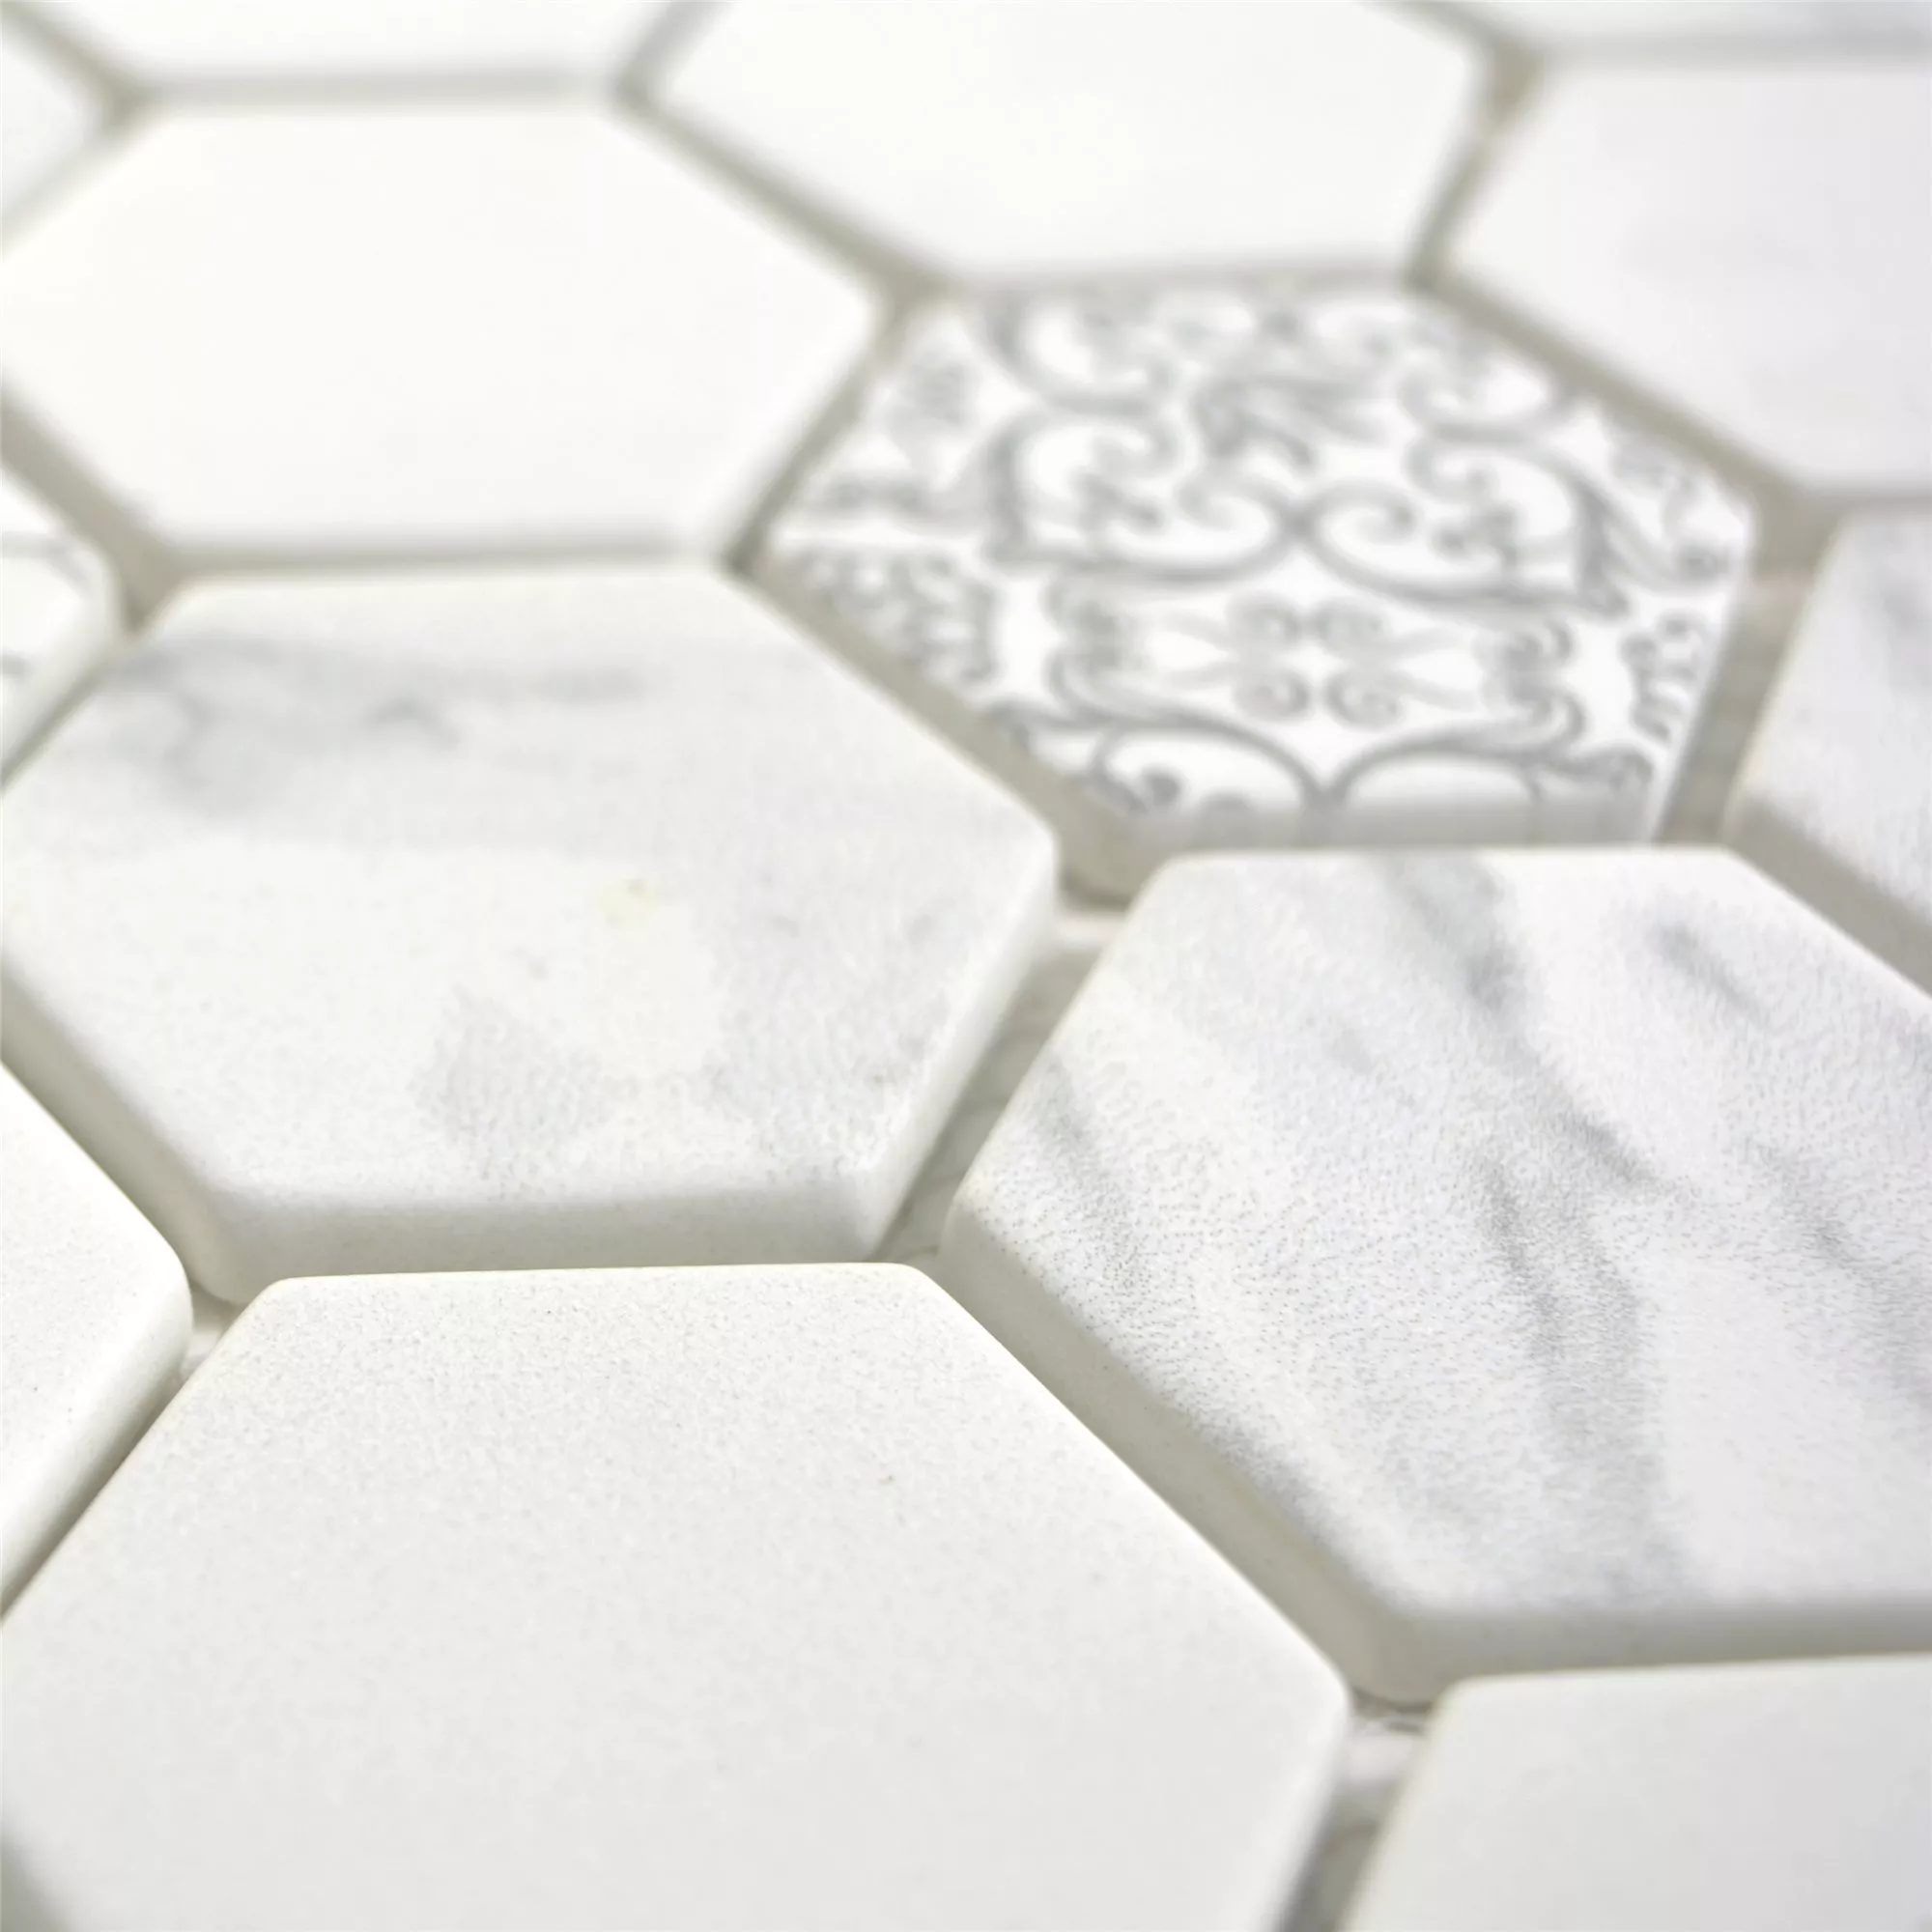 Sample Glass Mosaic Tiles Acapella Carrara Hexagon